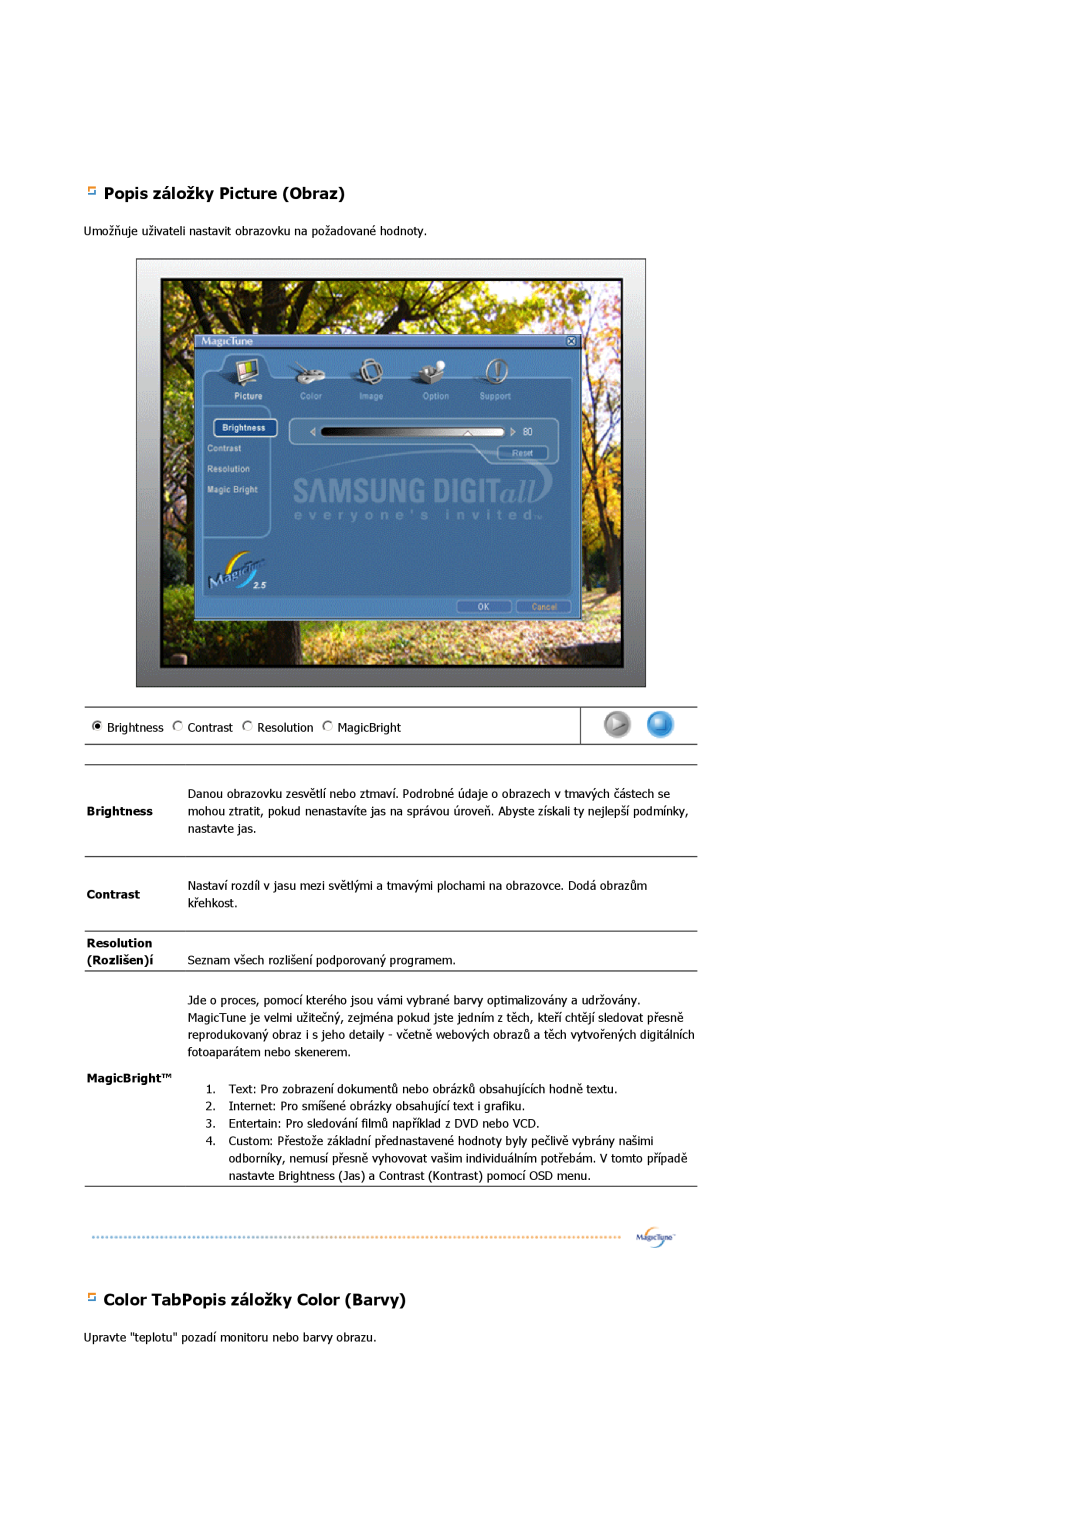 Samsung MJ15ASSN/EDC Popis záložky Picture Obraz, Color TabPopis záložky Color Barvy, Brightness, Contrast, Resolution 